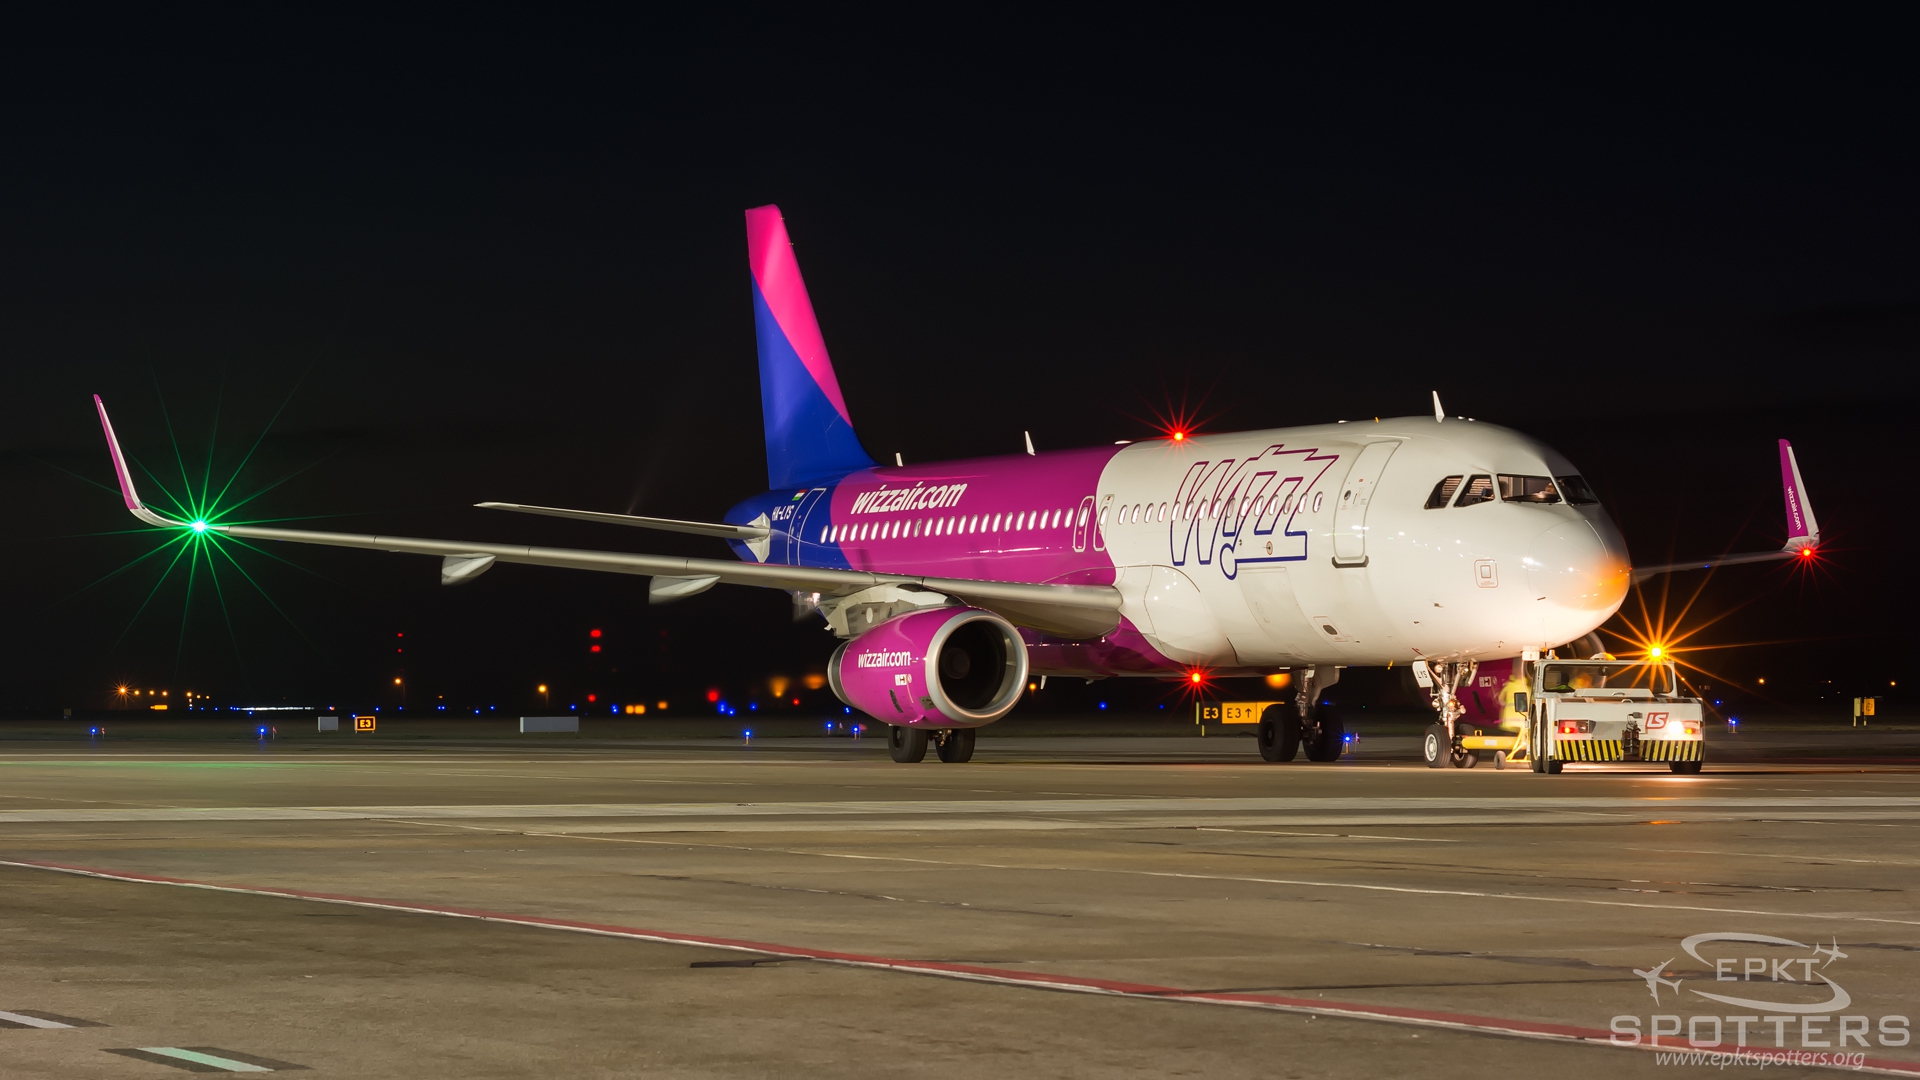 HA-LYS - Airbus A320 -200 (Wizz Air) / Pyrzowice - Katowice Poland [EPKT/KTW]